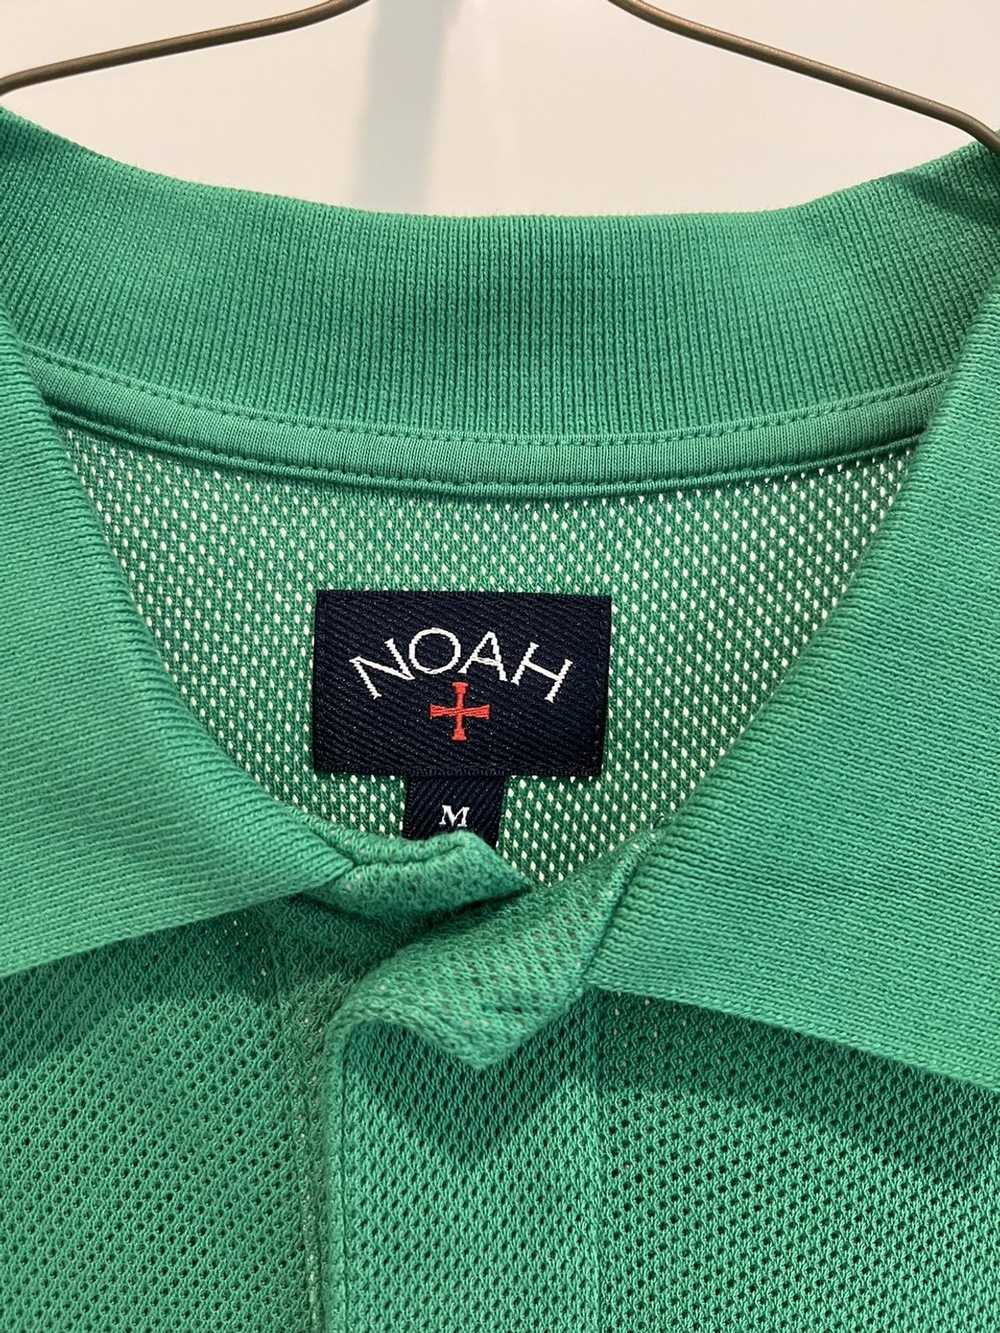 Noah Green Polo - Noah NYC - image 2